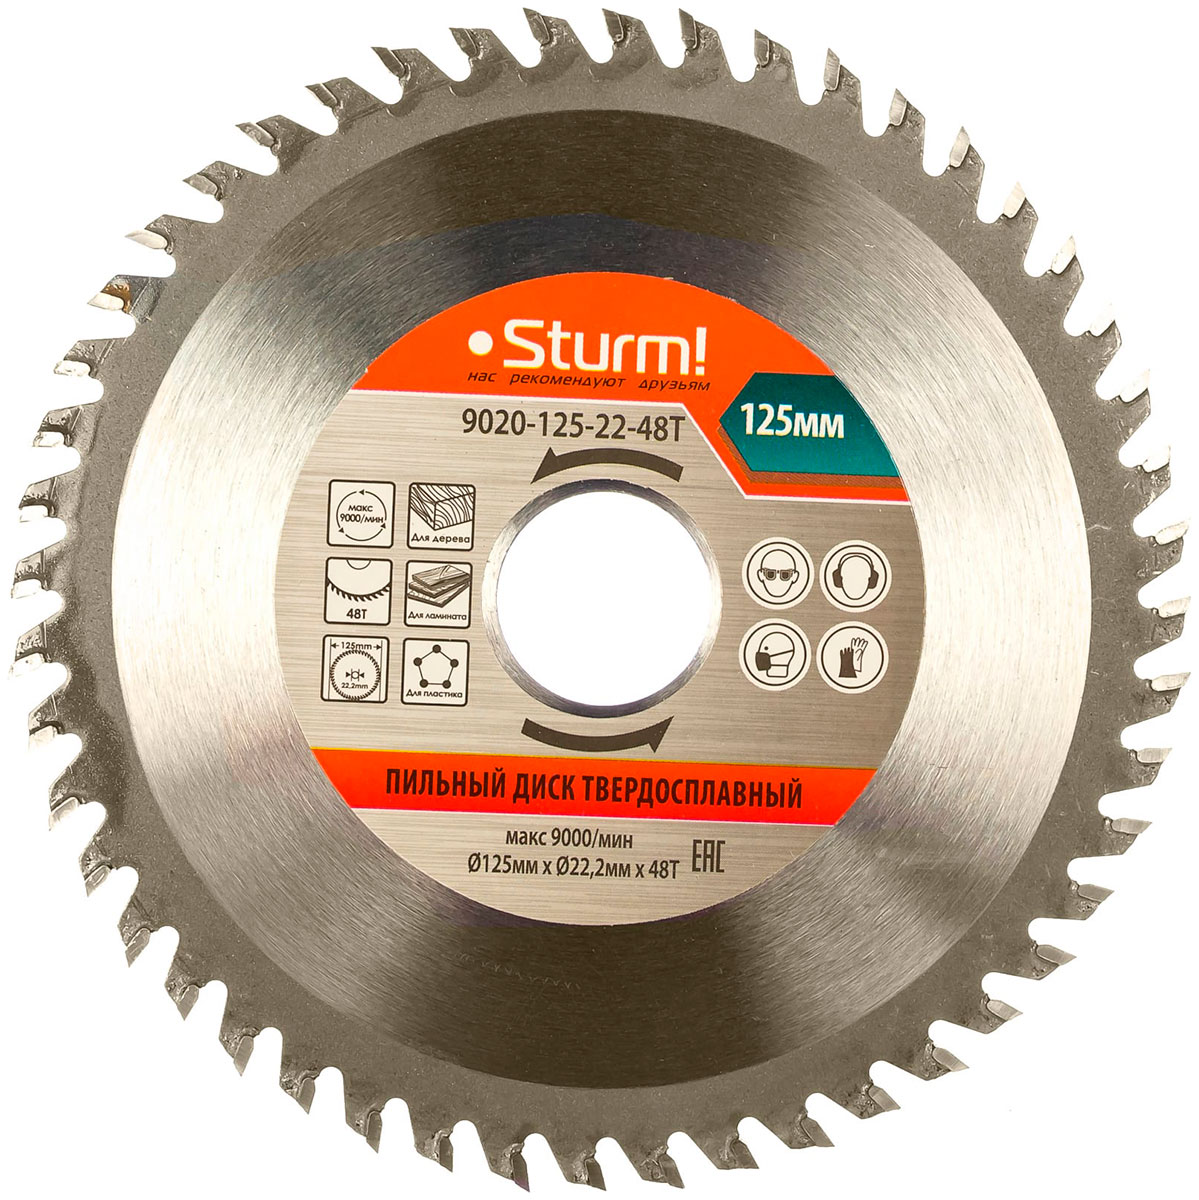 Пильный диск Sturm 9020-125-22-48T пильный диск sturm 9020 125 22 48t